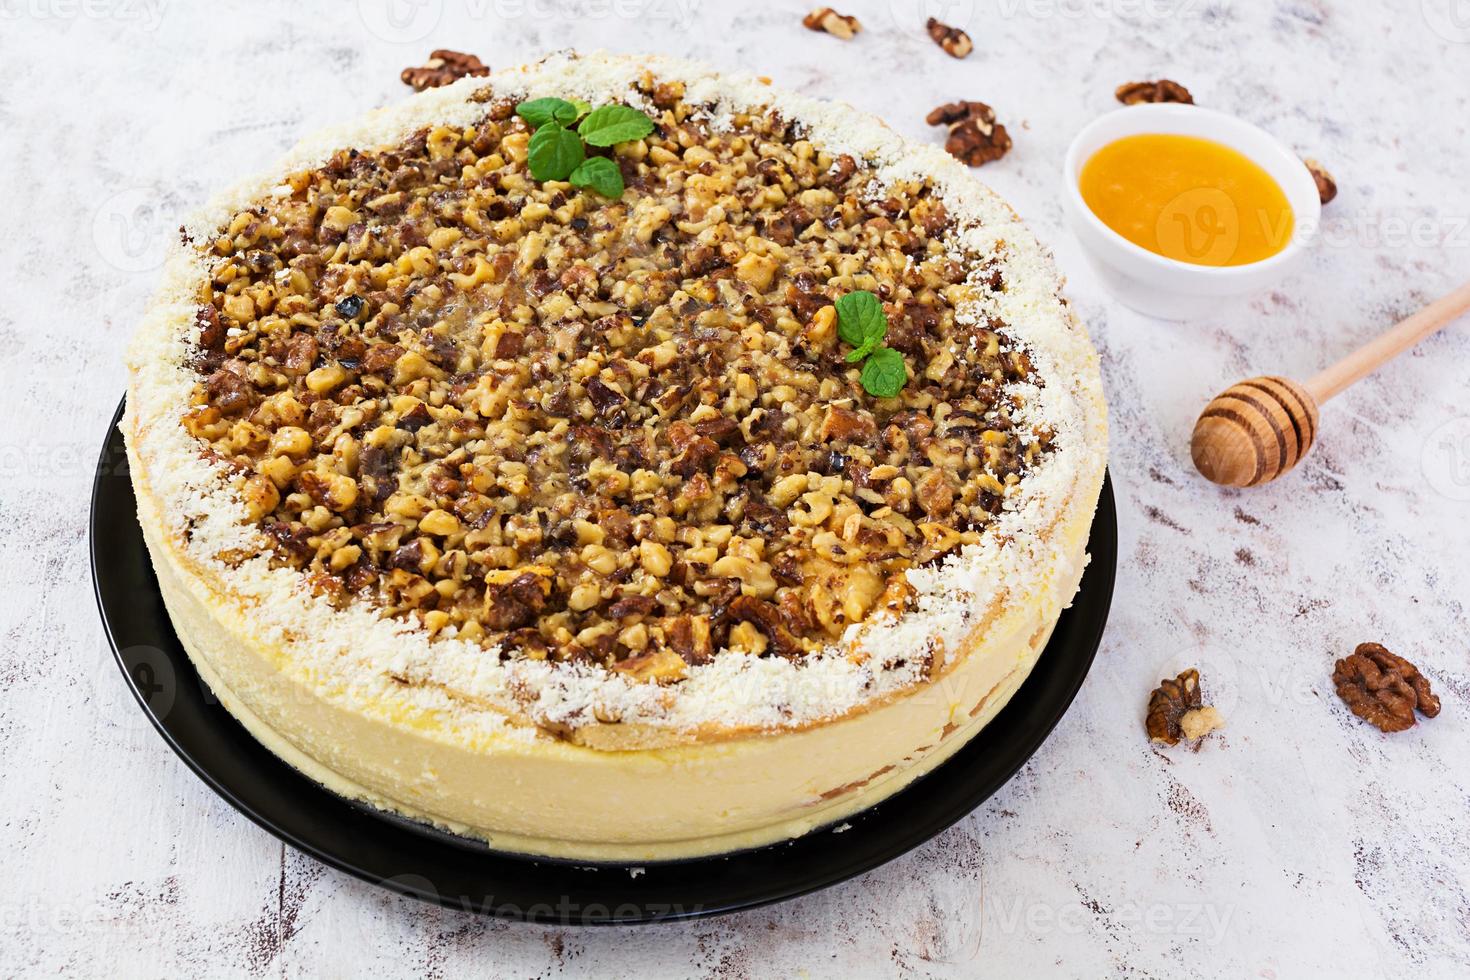 gâteau au miel avec fromage cottage, oranges et noix, décoré de chocolat blanc photo